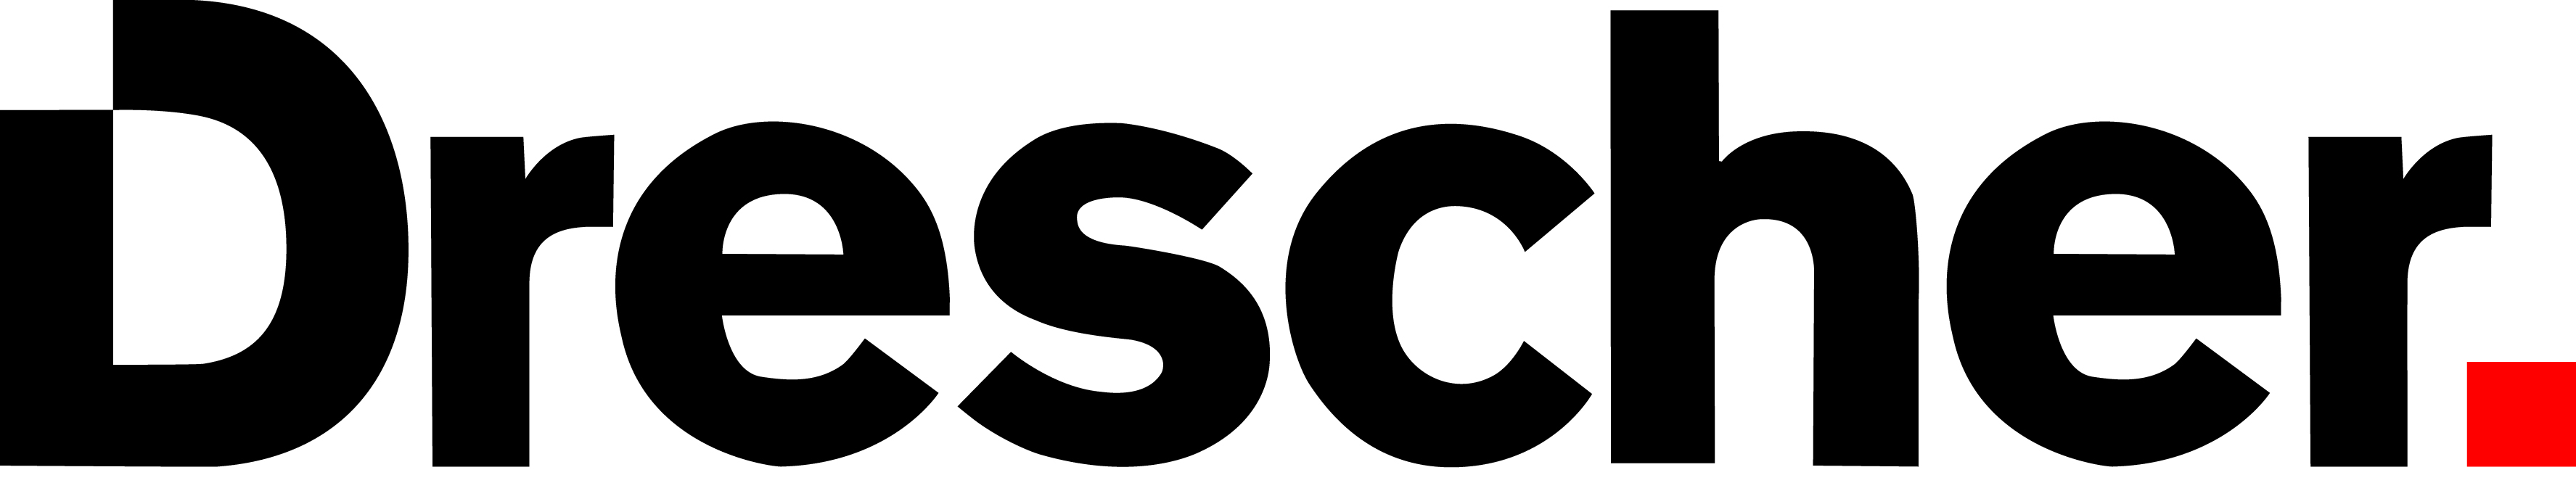 Drescher logo.jpg